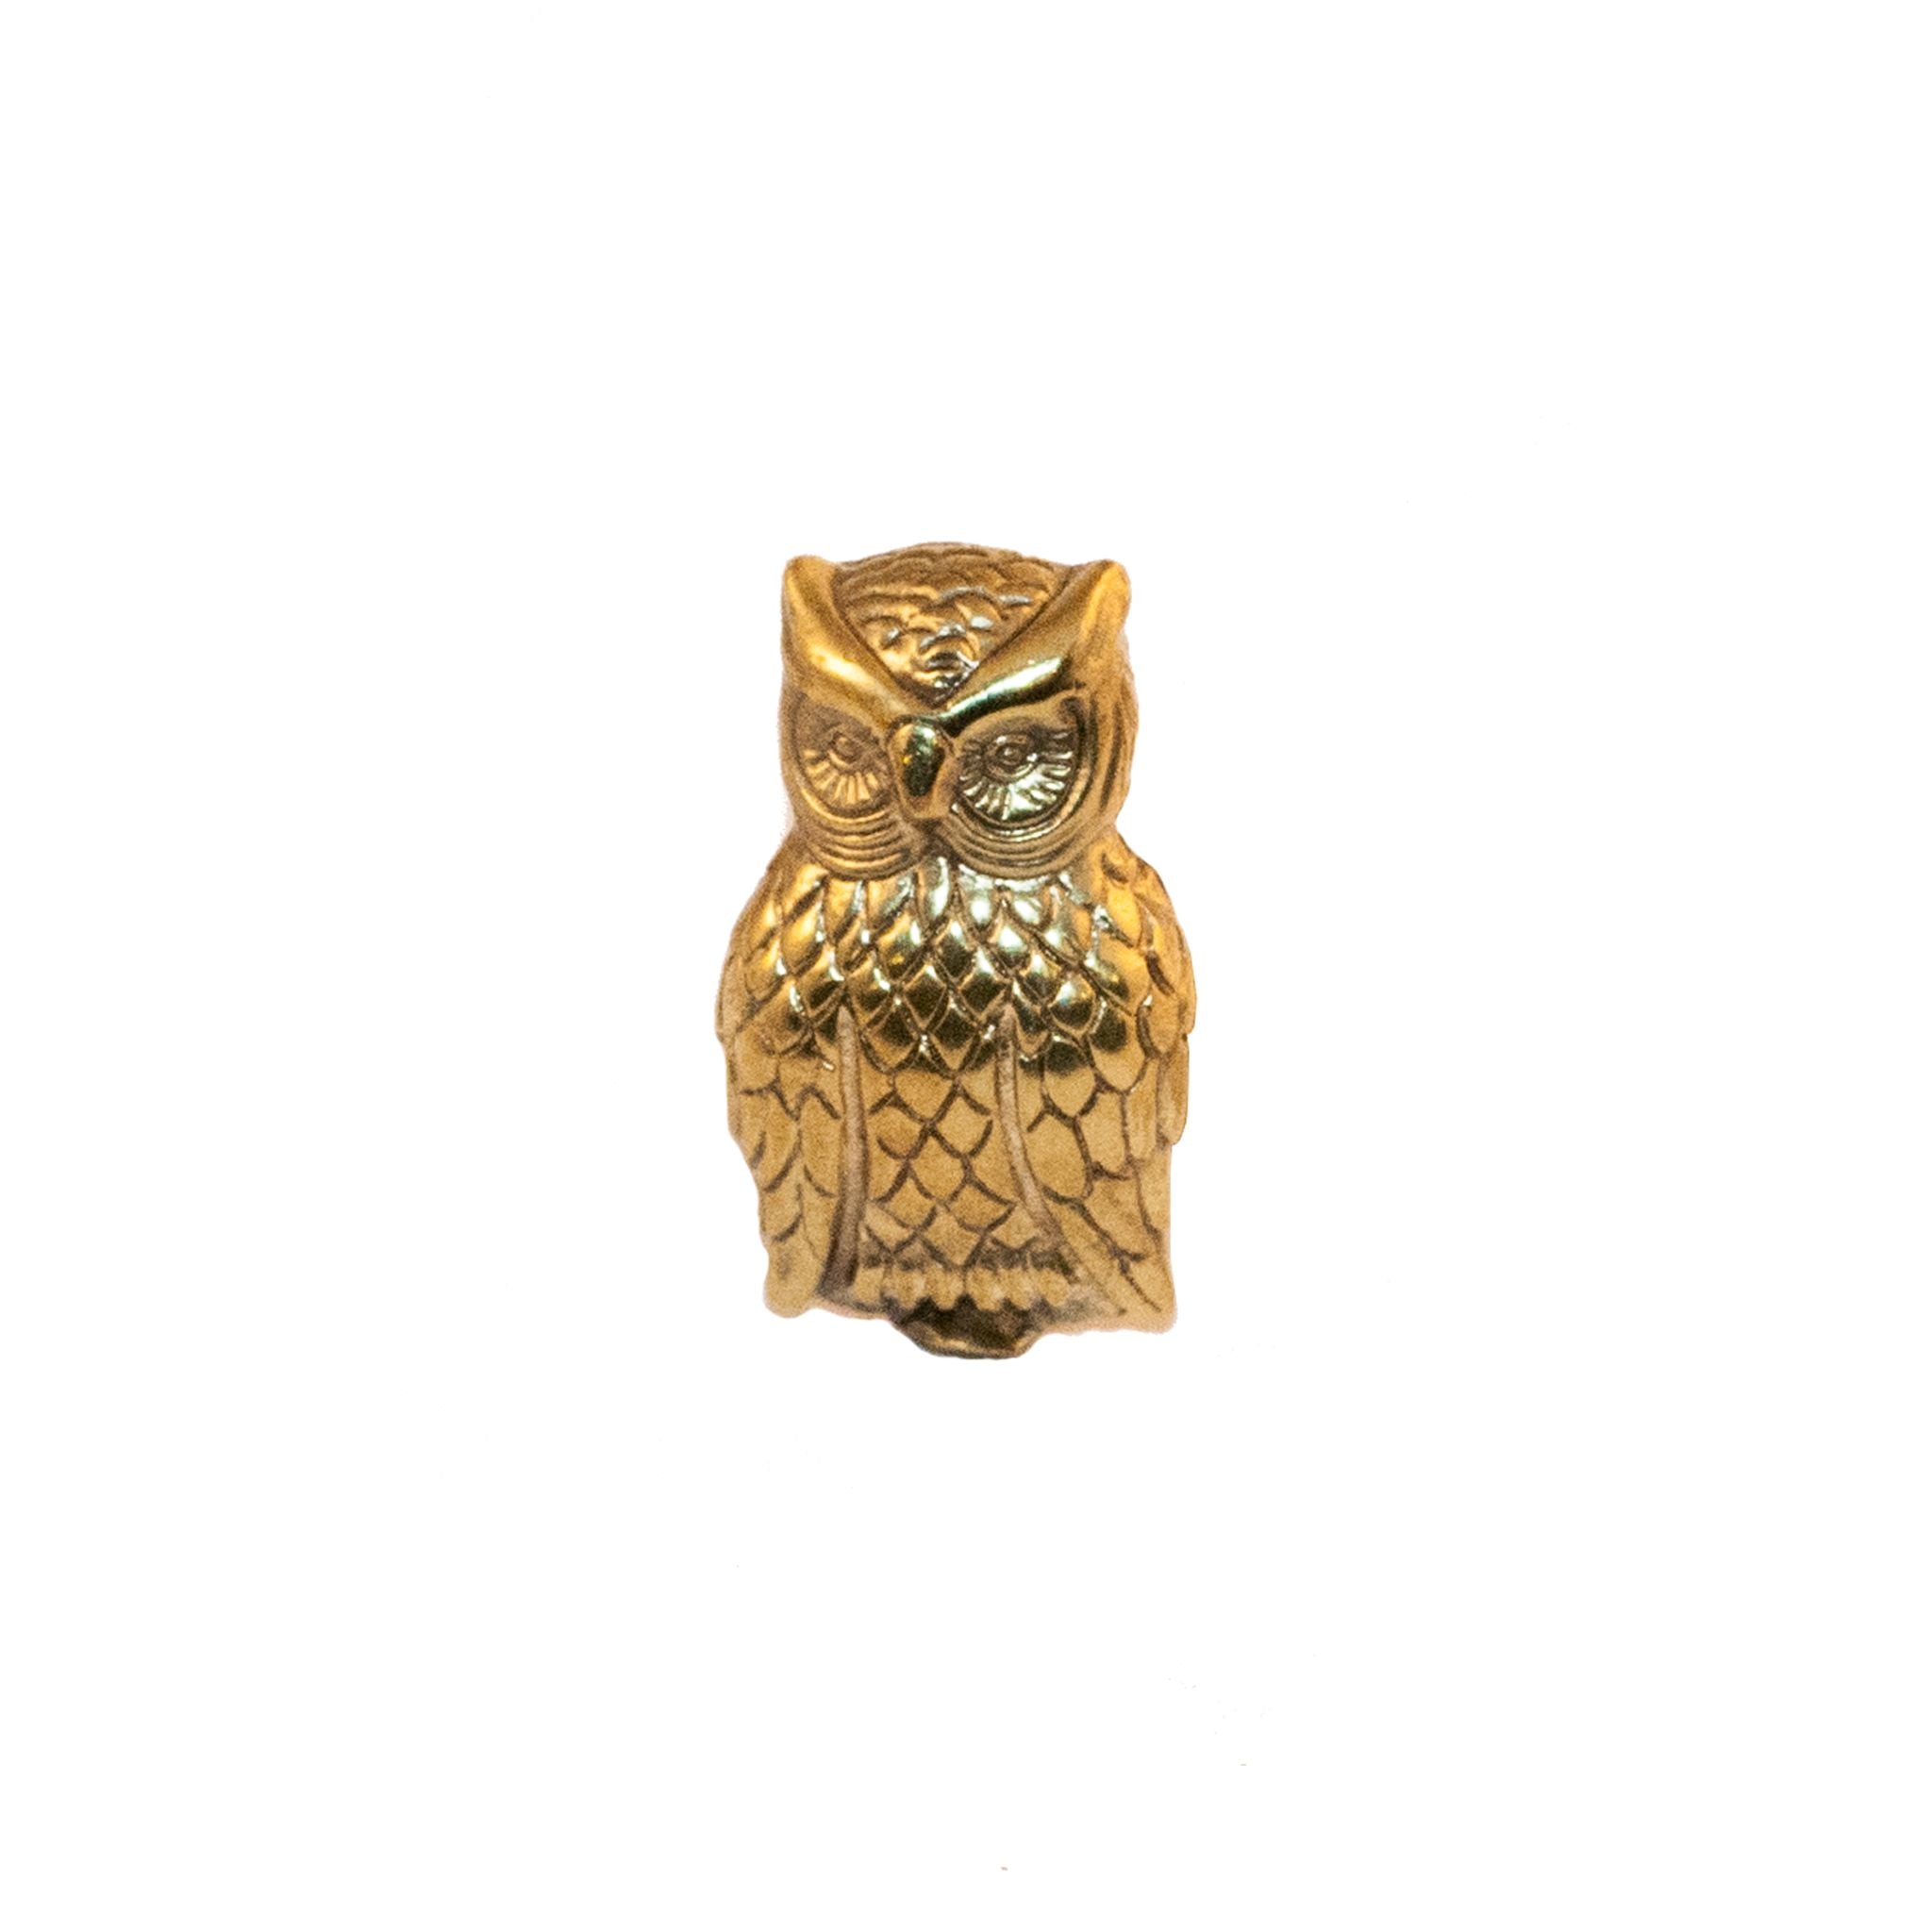 A small brass knob shaped like an owl.